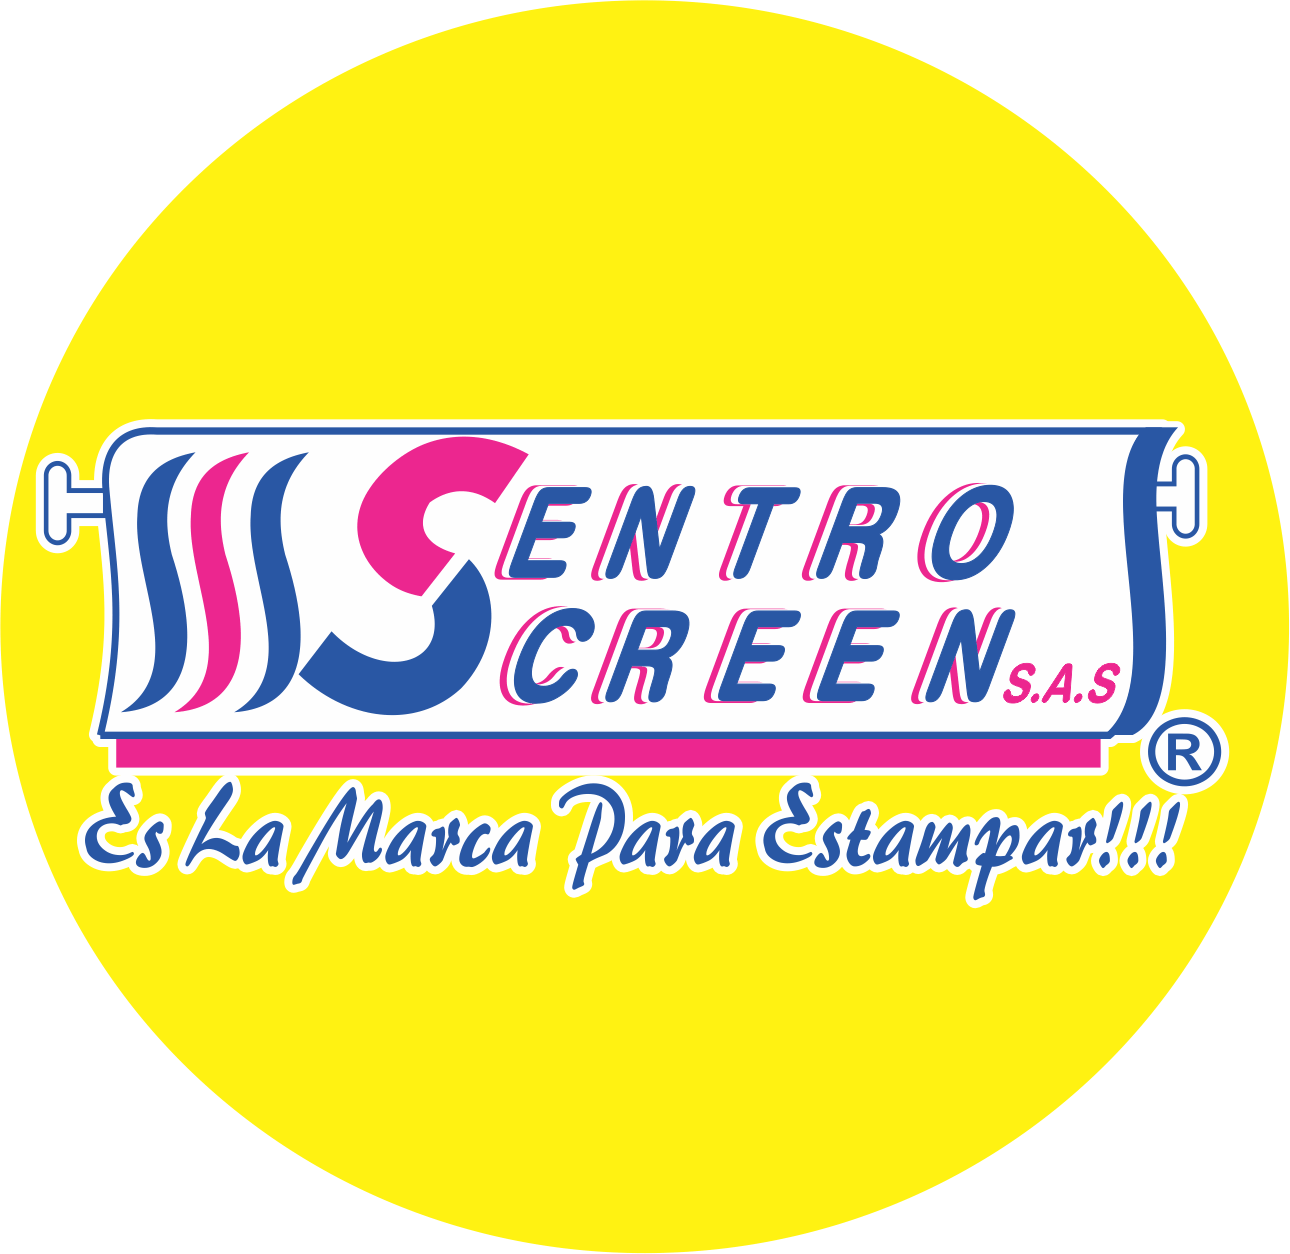 CENTRO SCREEN S.A.S.